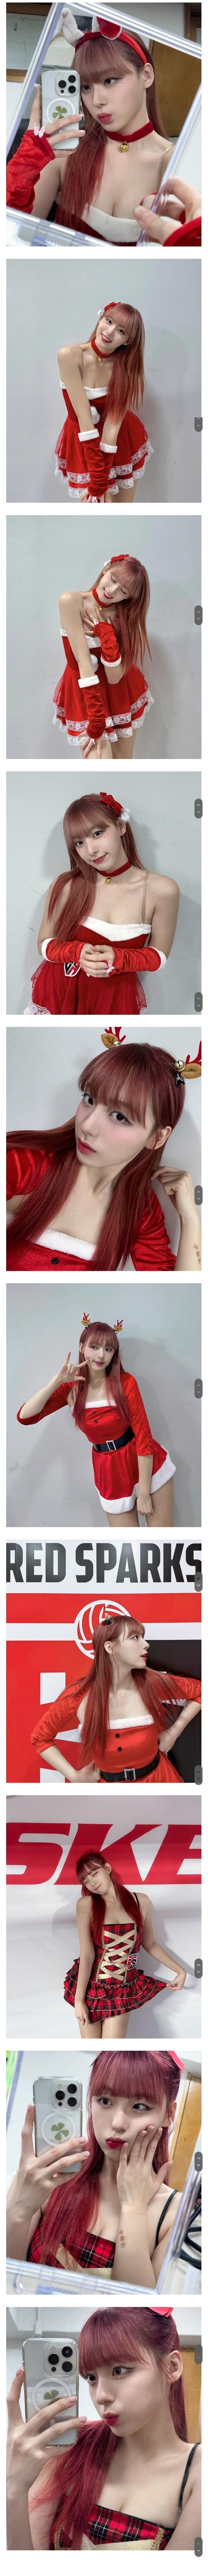 Cheerleader Ha Jiwon cheerleader Instagram Santa Girl outfit